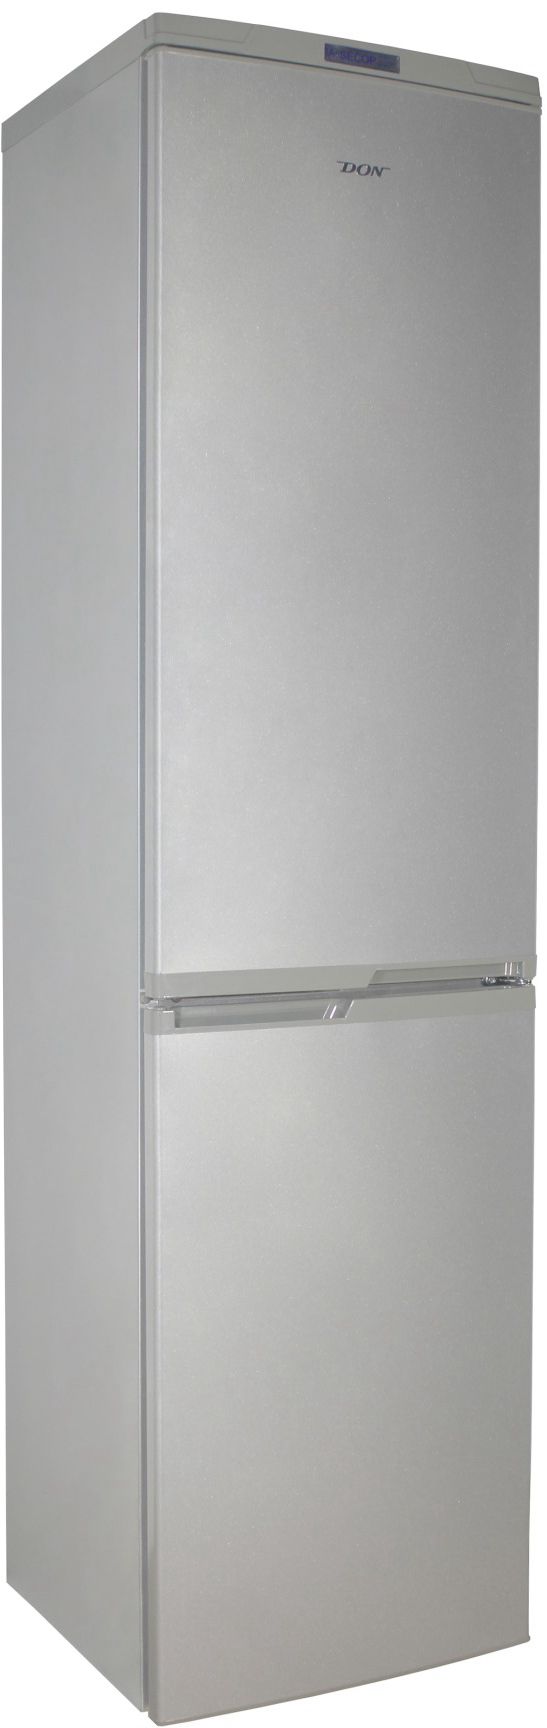 холодильник don r299, купить в Красноярске холодильник don r299,  купить в Красноярске дешево холодильник don r299, купить в Красноярске минимальной цене холодильник don r299